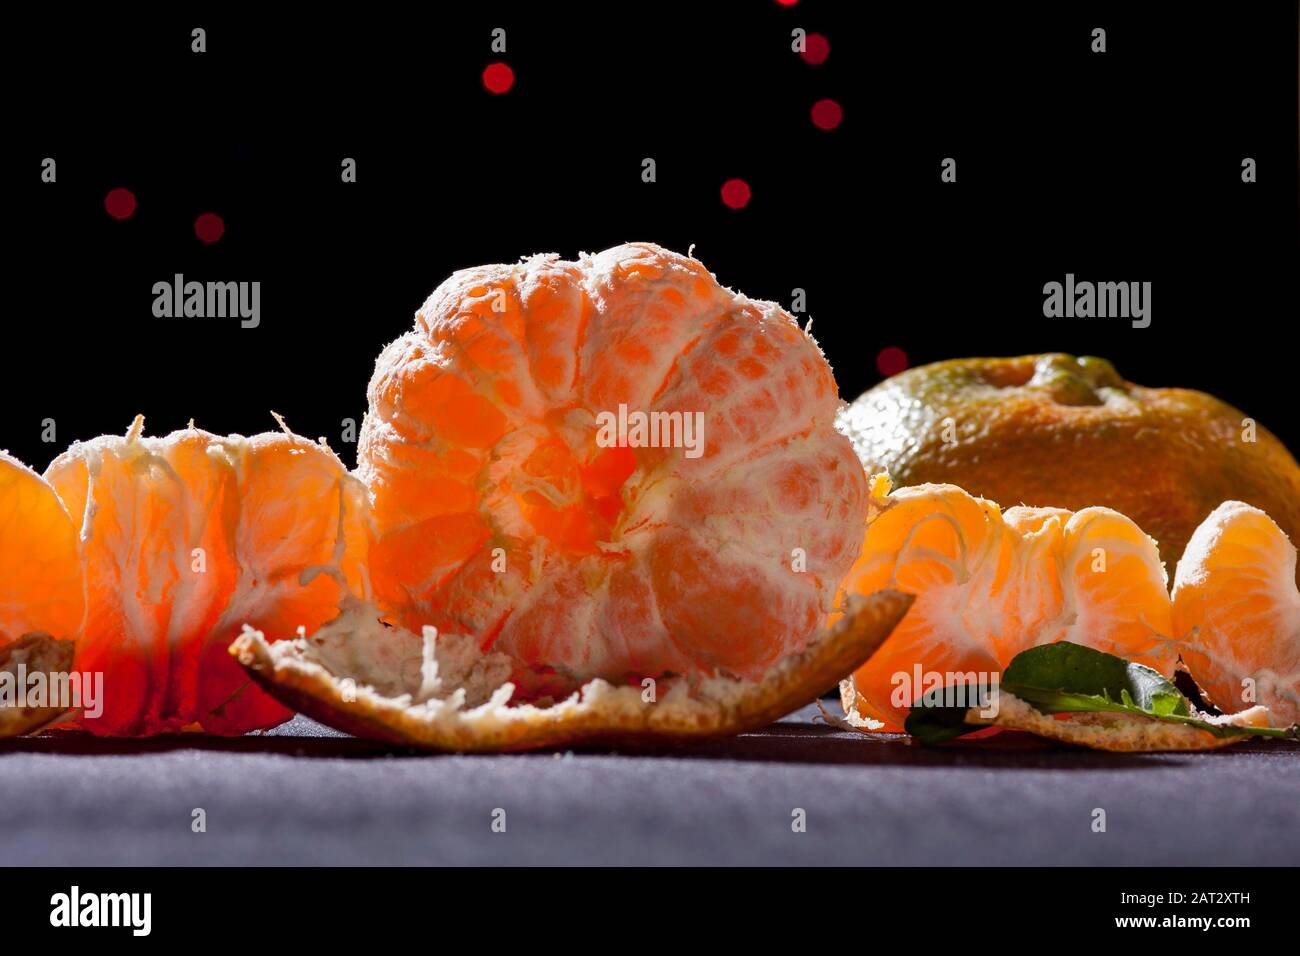 Orangen Tangerin, Zitrusreticula. Auf dem Tisch mit schwarzem Hintergrund und Hintergrundbeleuchtung Stillleben .Mandarinsorte Orange enthält Pomelo und c Vitamin. Stockfoto